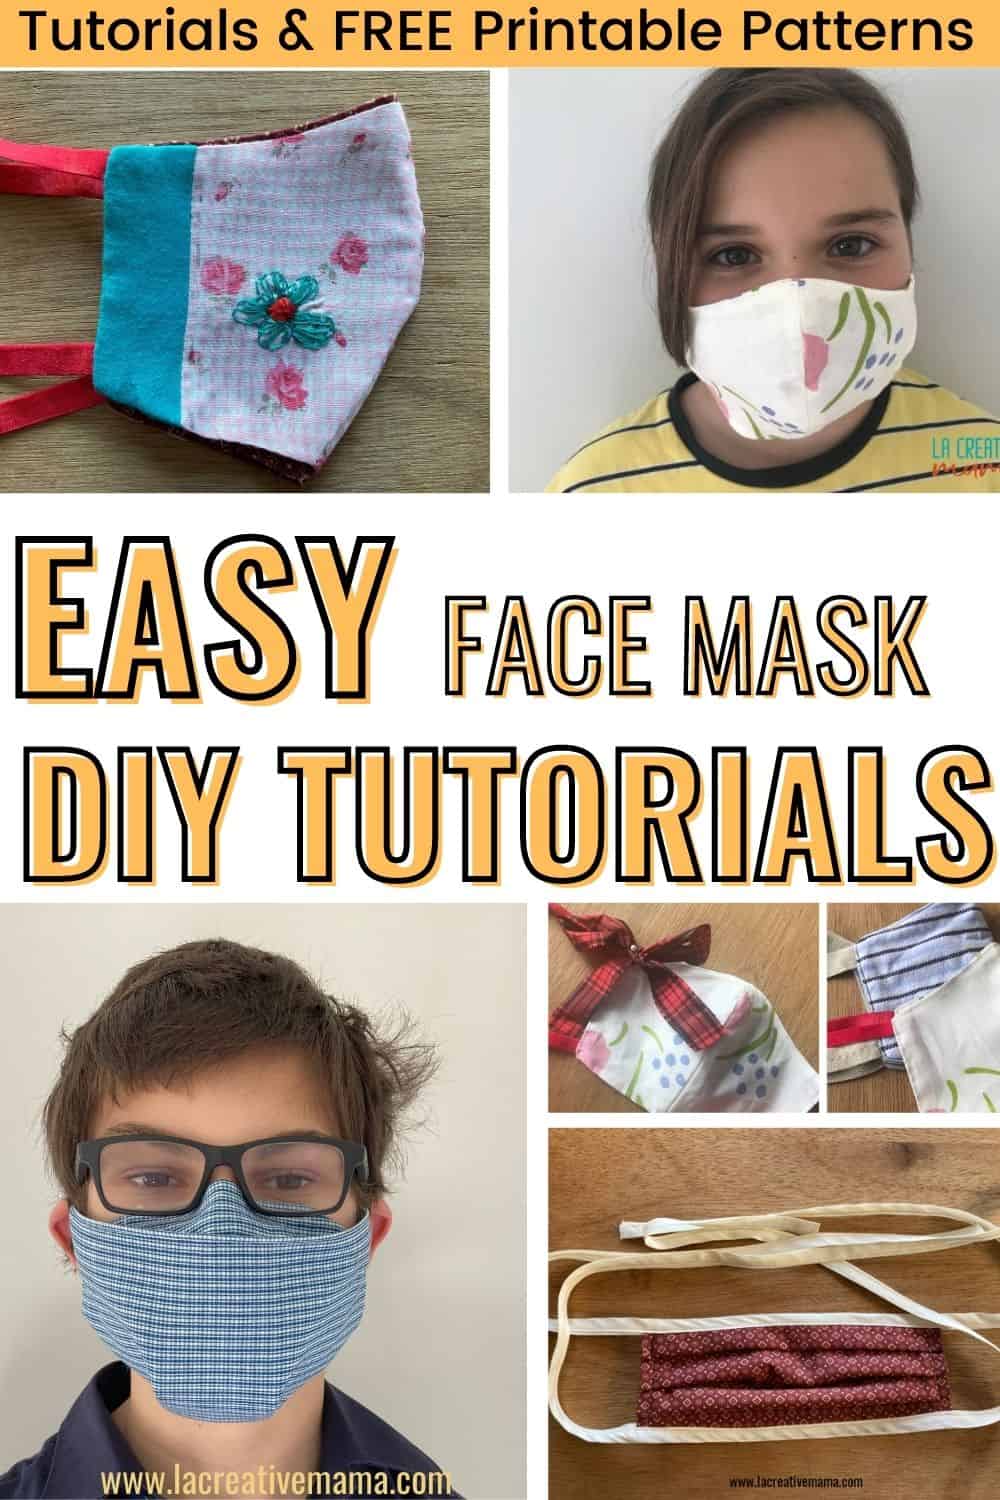 Easy & Quick DIY Face Masks Tutorials - La creative mama